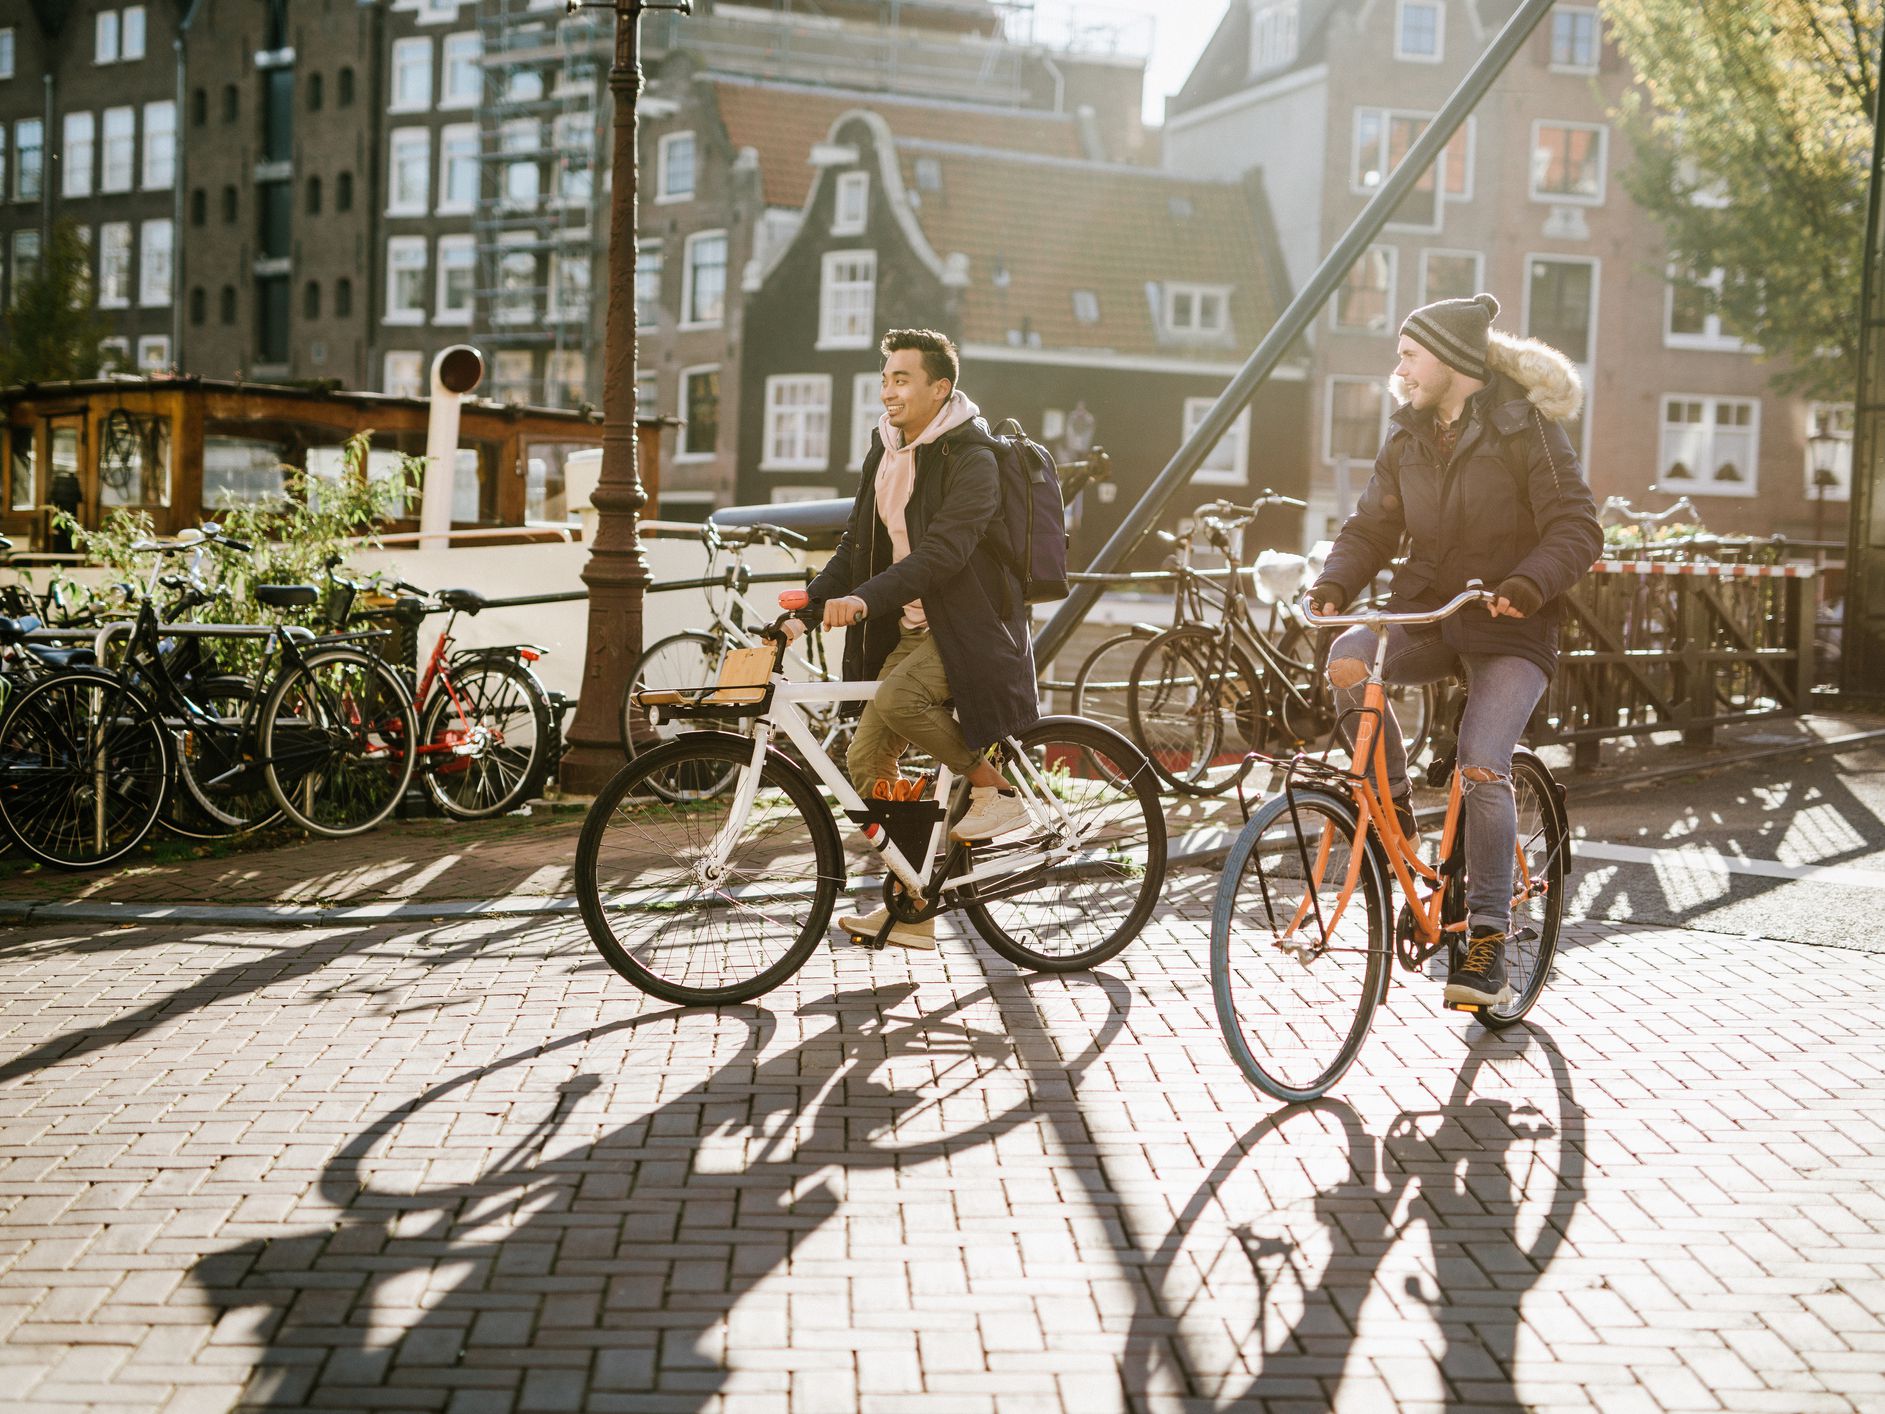 Hal-Hal Yang Harus Diketahui Tentang Lifestyle Belanda